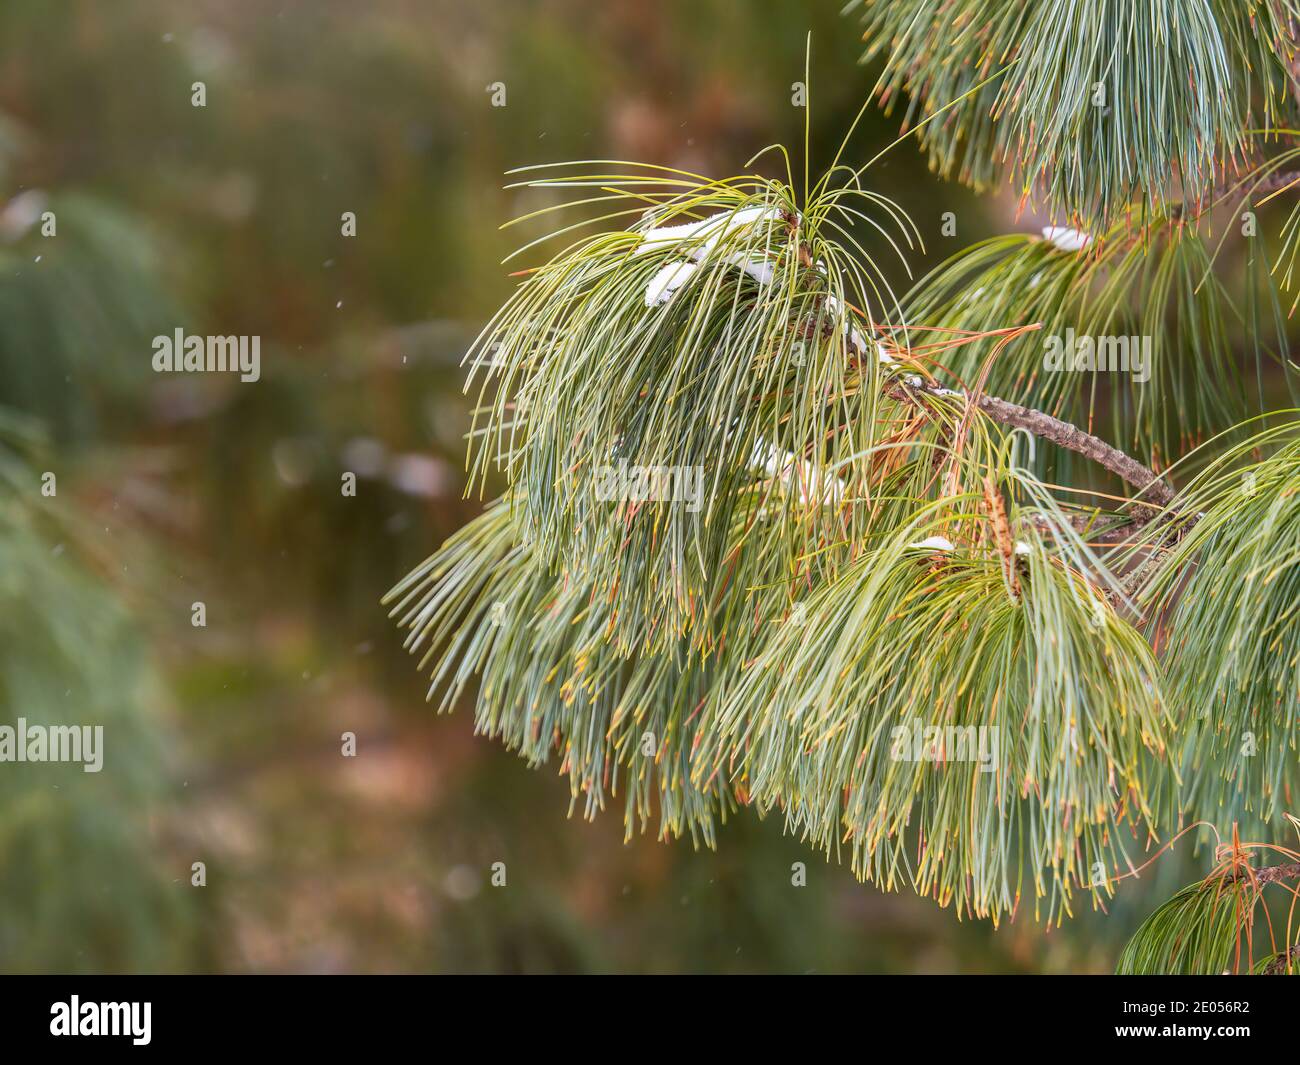 Zedernzweige mit langen flauschigen Nadeln. Pinus sibirica oder sibirische  Kiefer. Kiefer Zweig mit langen und dünnen Nadeln. Weihnachten Hintergrund  Stockfotografie - Alamy